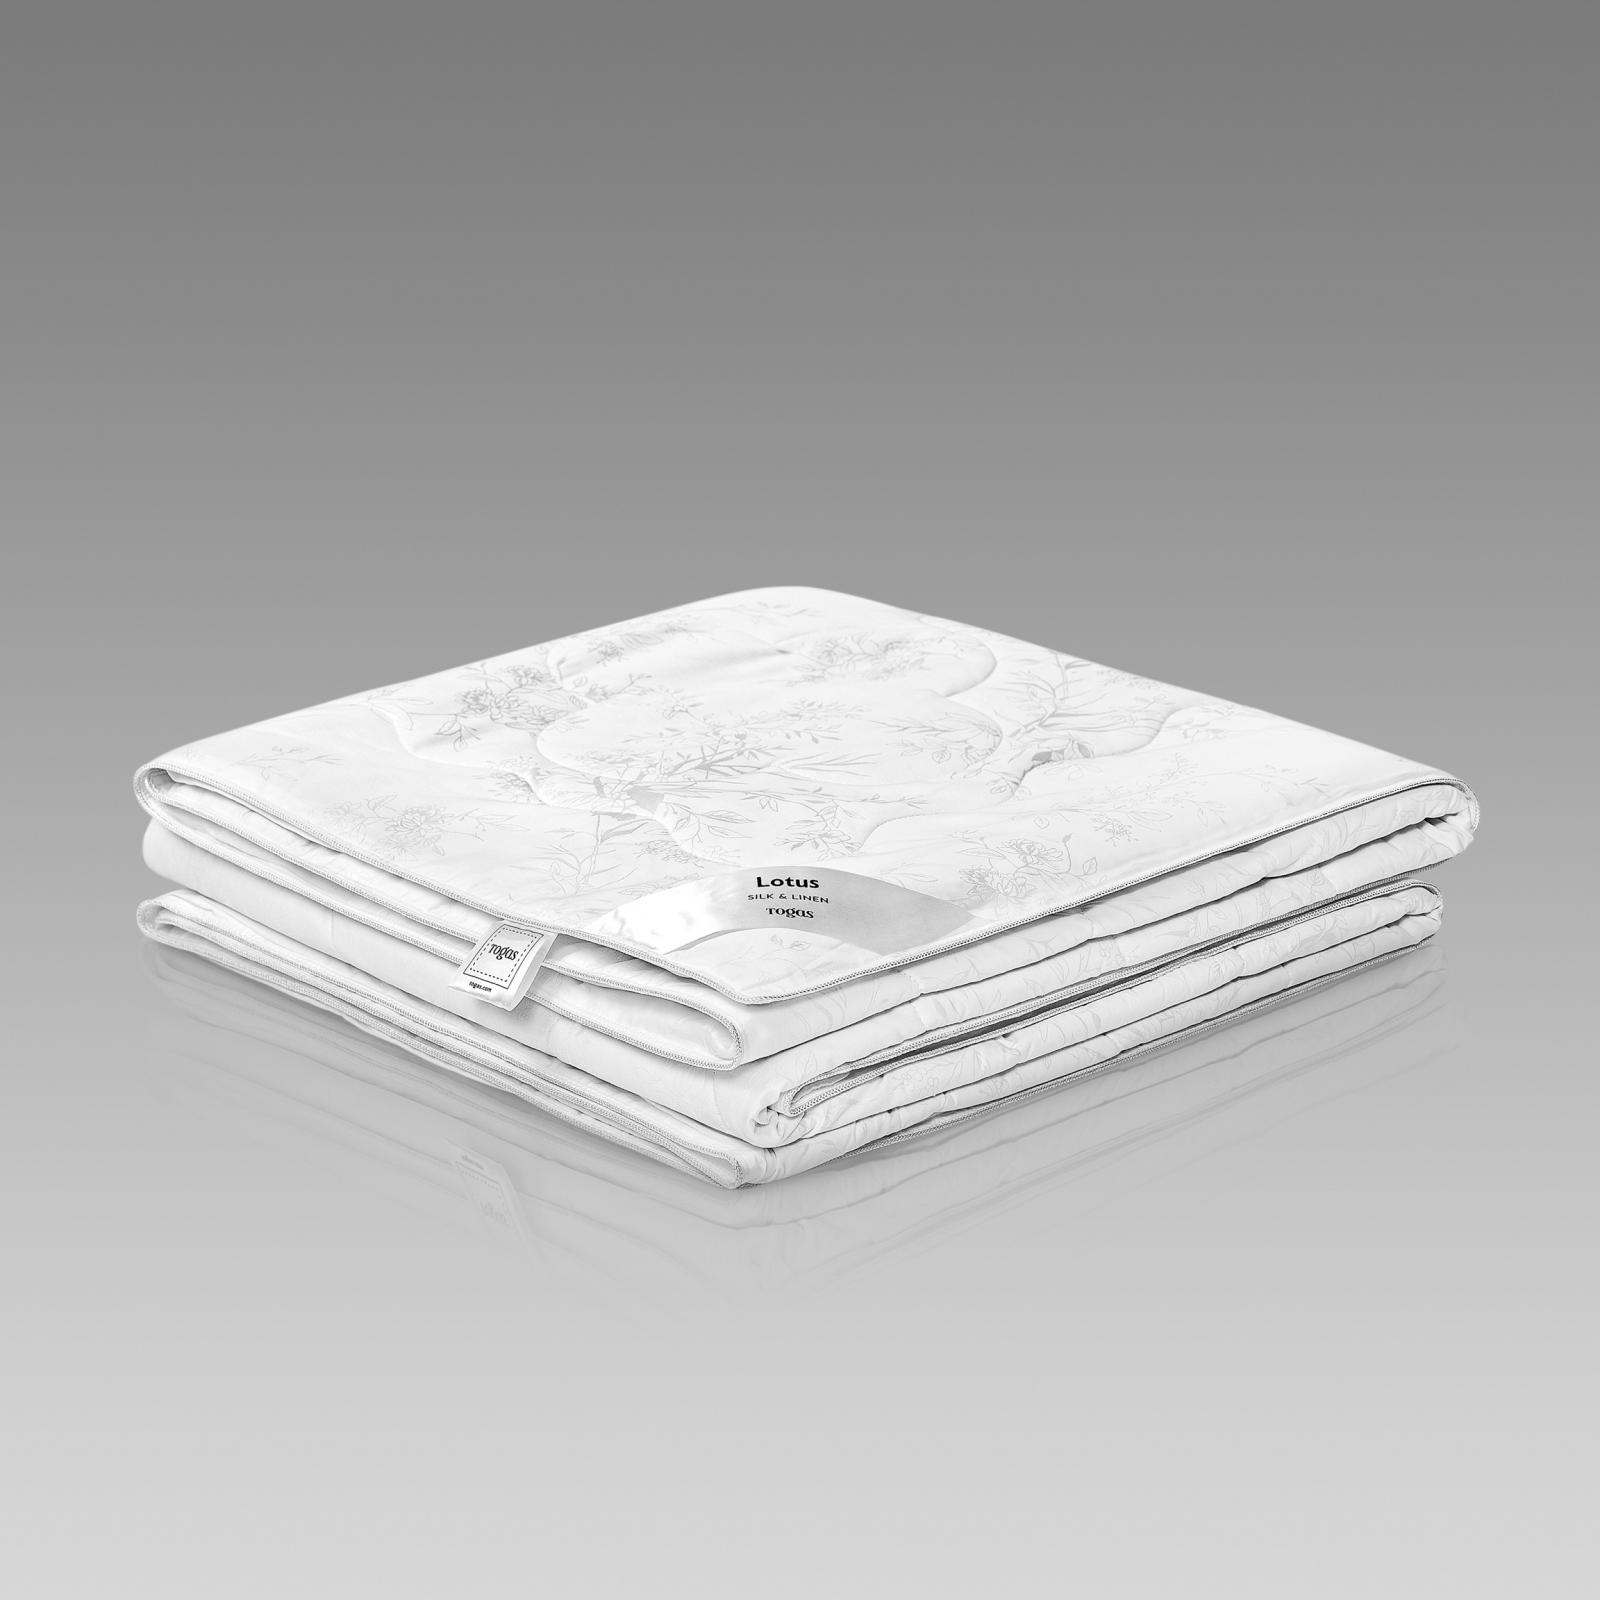 одеяло togas лира белое 140х200 см 20 04 17 0091 Одеяло Togas Лотос белое 140х200 см (20.04.29.0003)